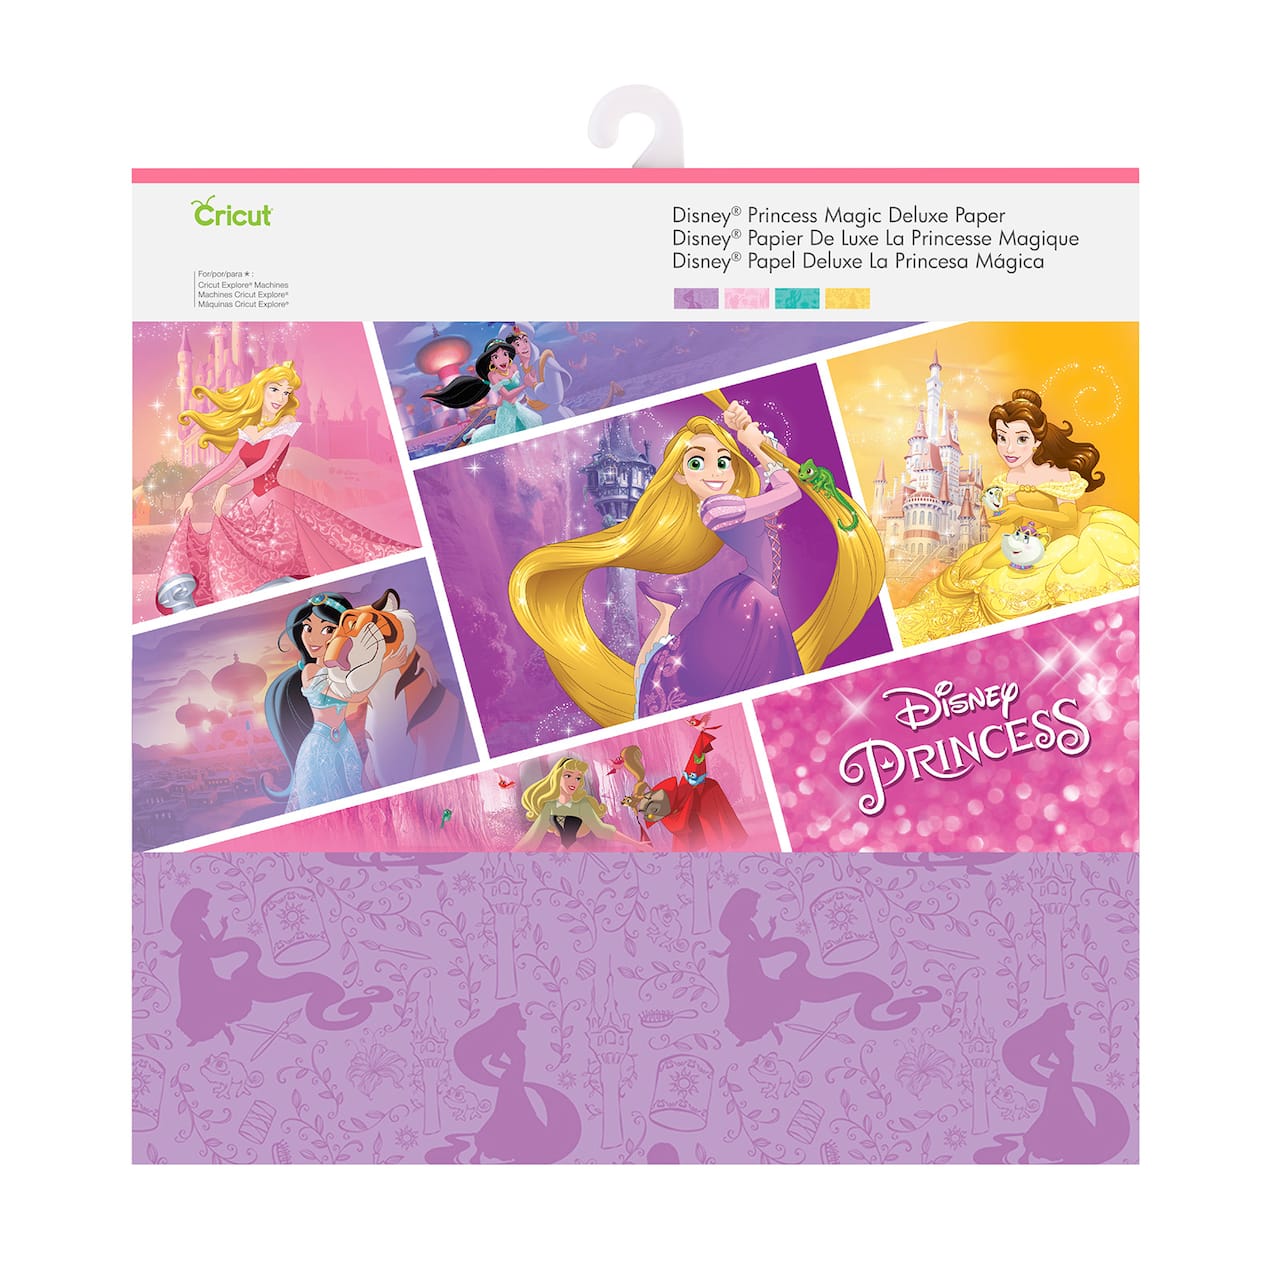 Cricut&#xAE; Disney&#xAE; Deluxe Paper, Princess Magic